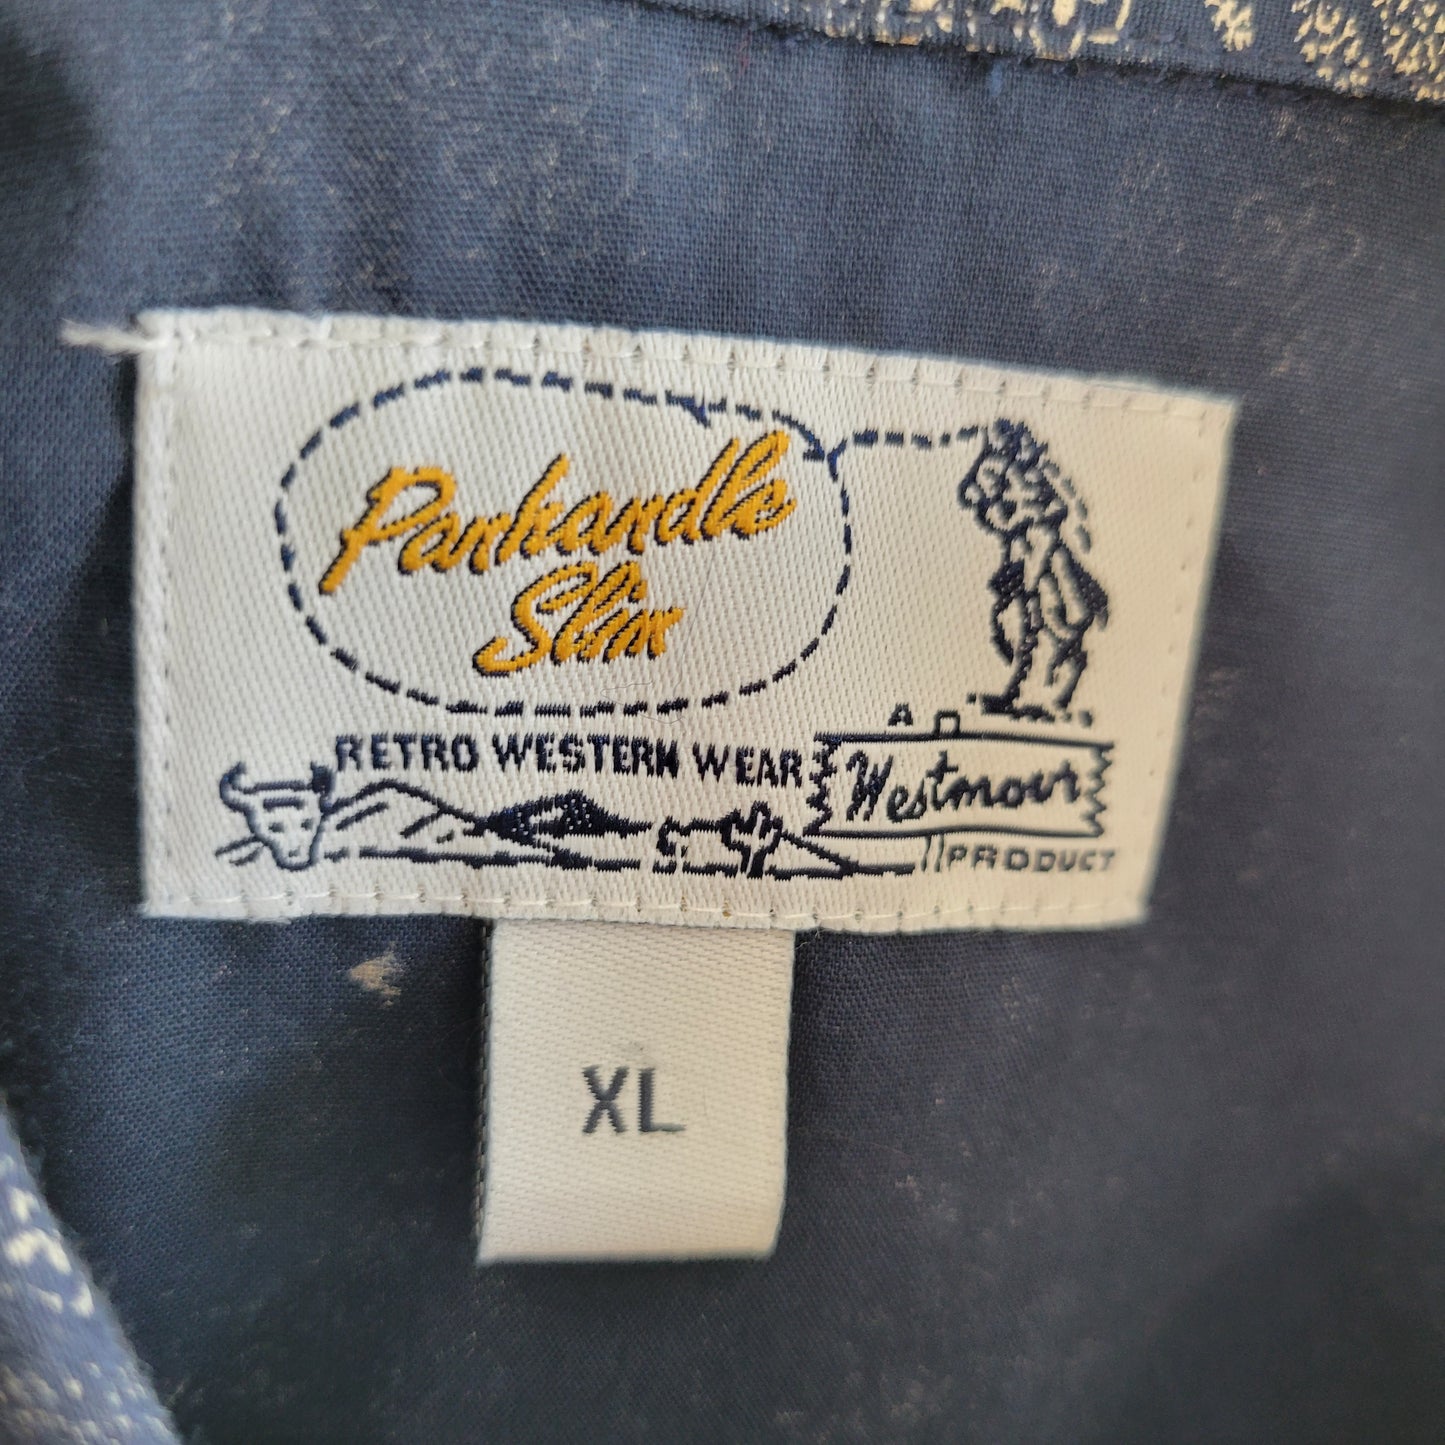 Panhandle Slim Westmont Product Vintage Western Shirt - XL